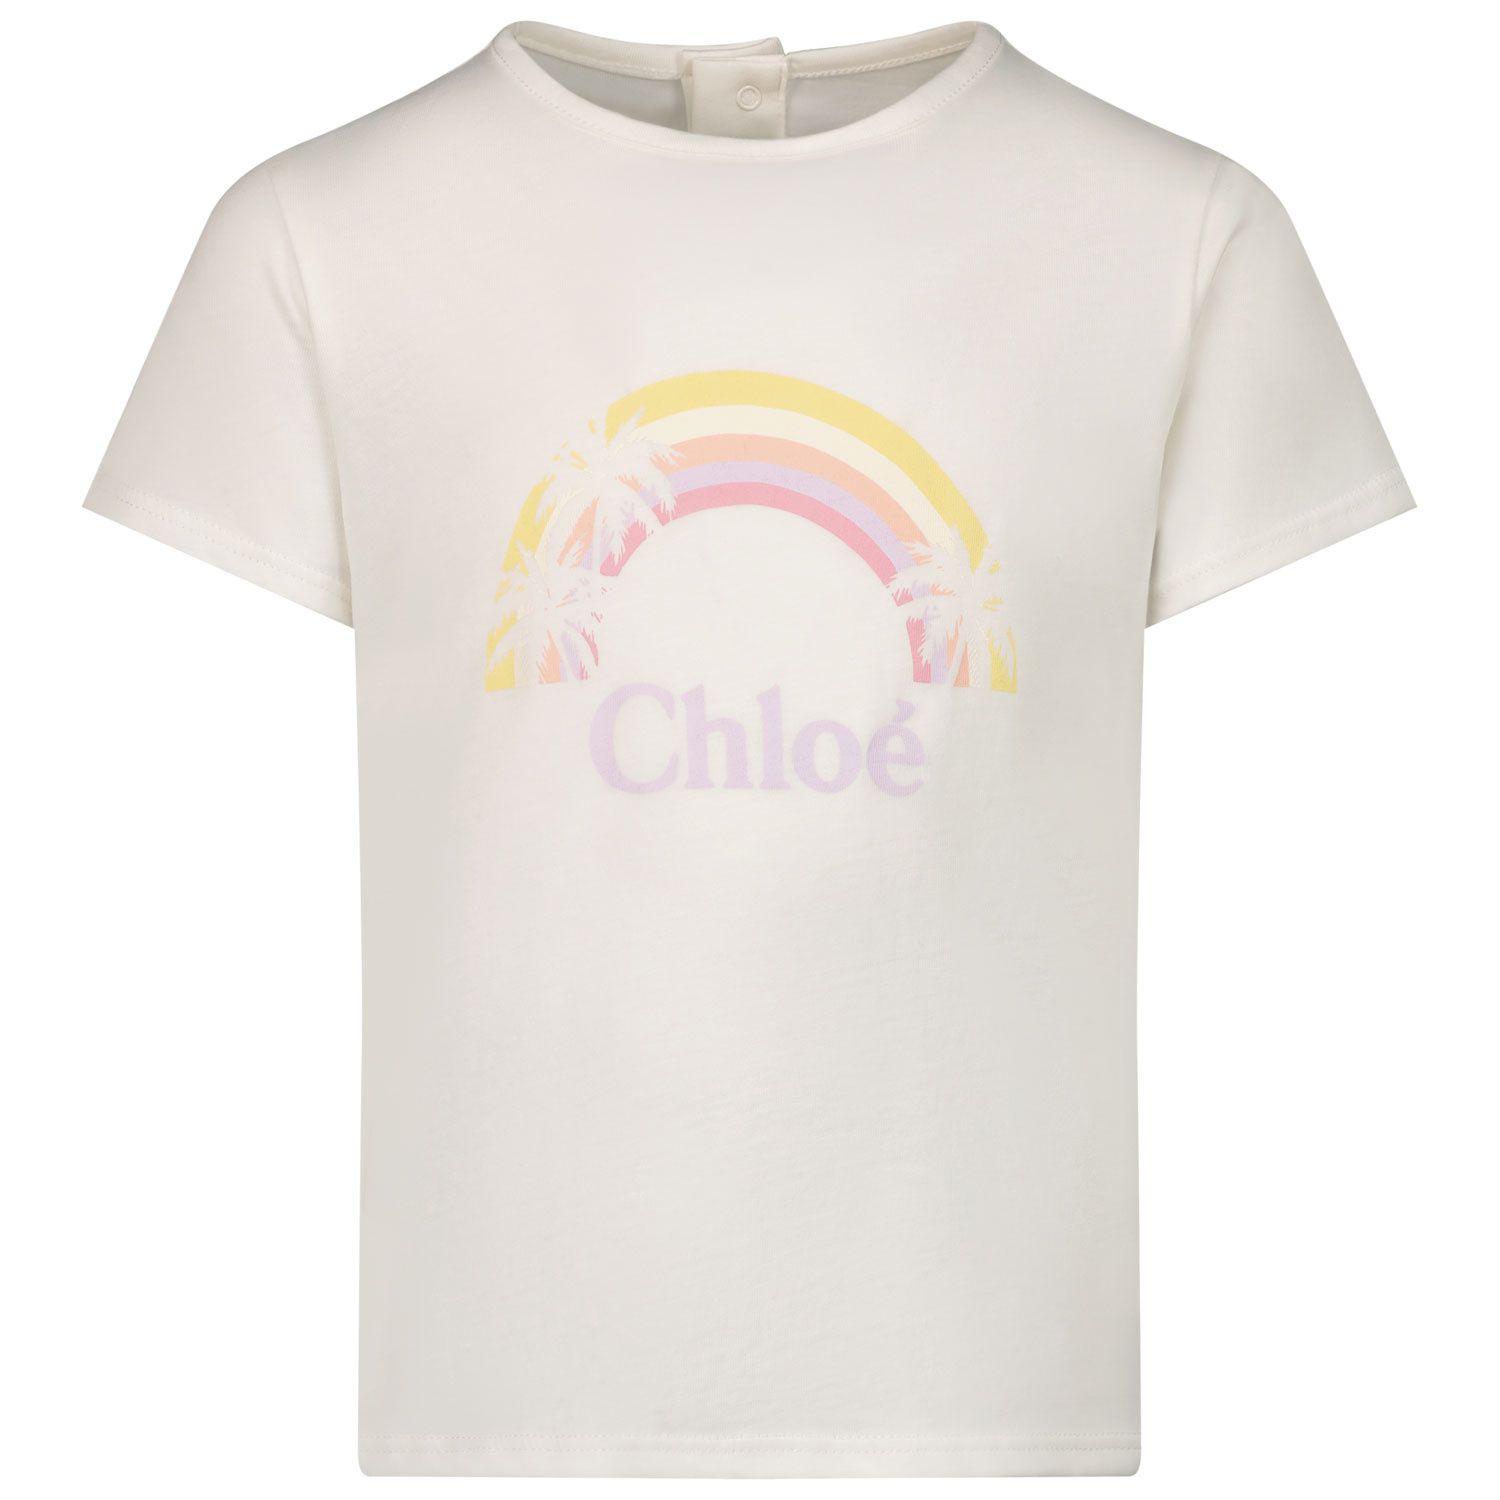 Afbeelding van Chloe C05403 baby t-shirt wit